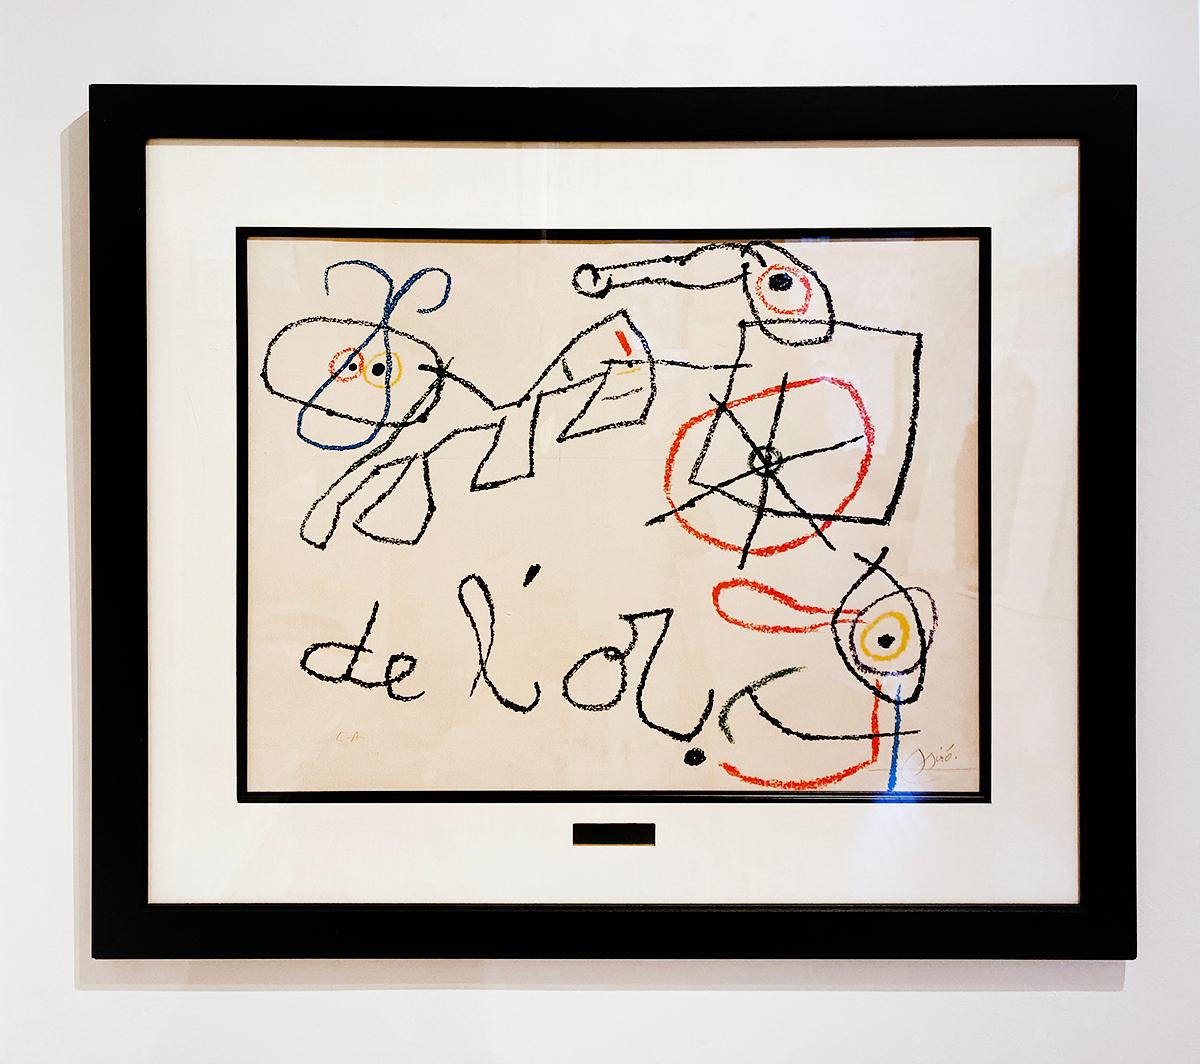 Ubu aux BalEares - Modern Print by Joan Miró